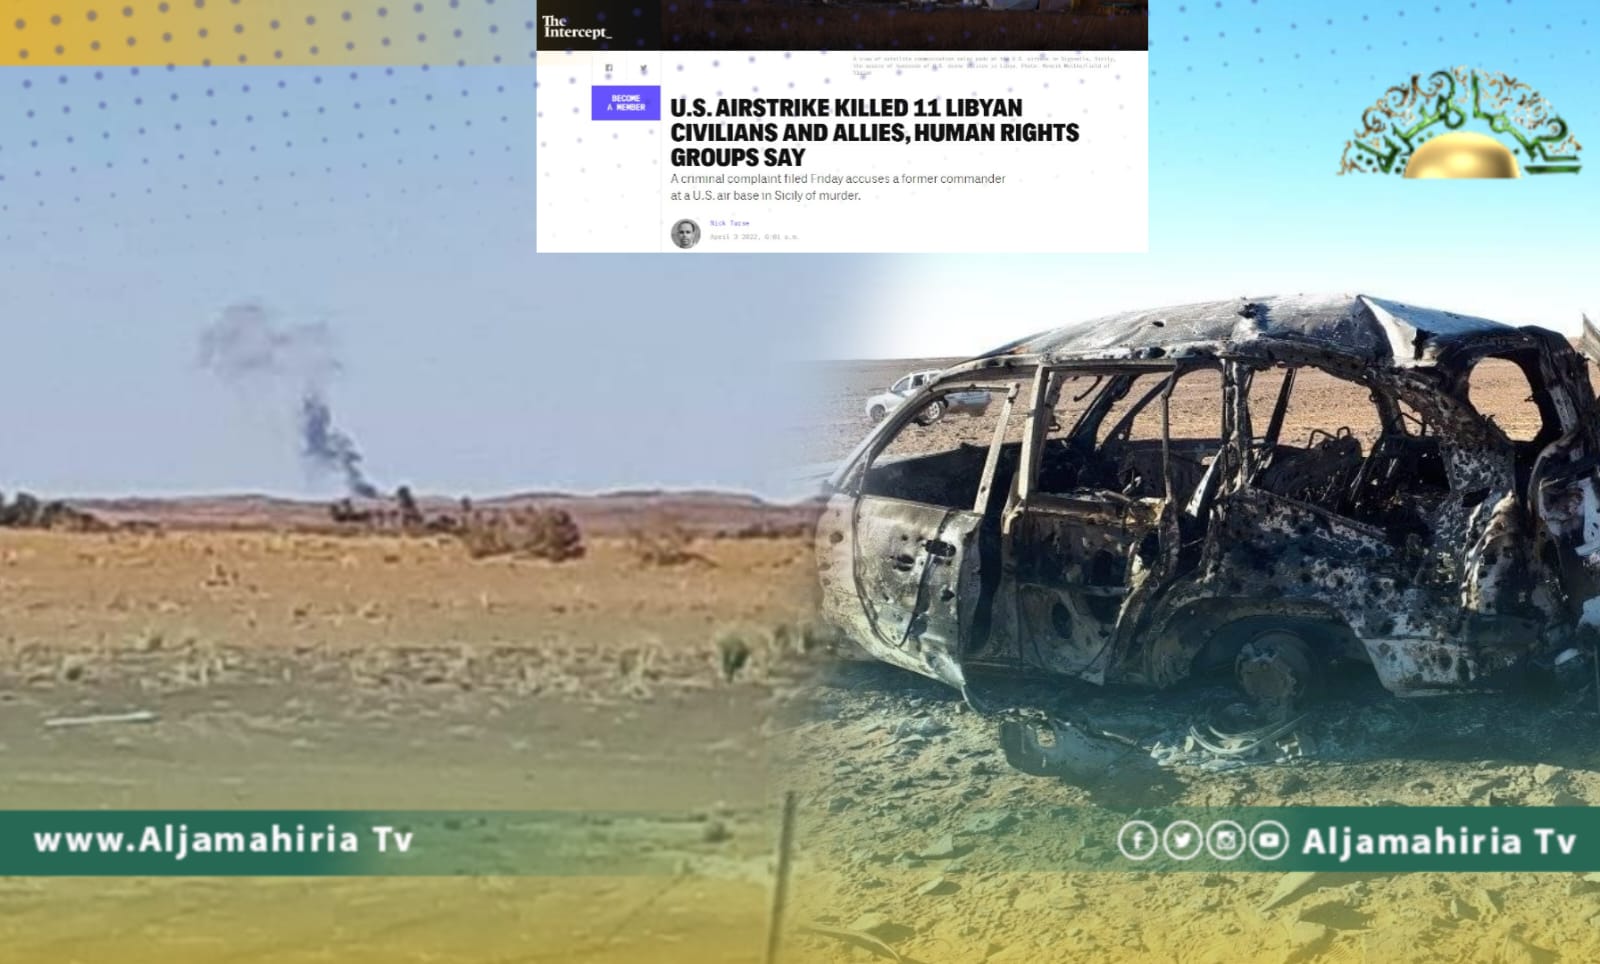 موقع أنترسبت الأمريكي: غارة تتبع الأفريكوم قتلت 11 ليبيا مدنيا وهذا الخطأ سيتكرر